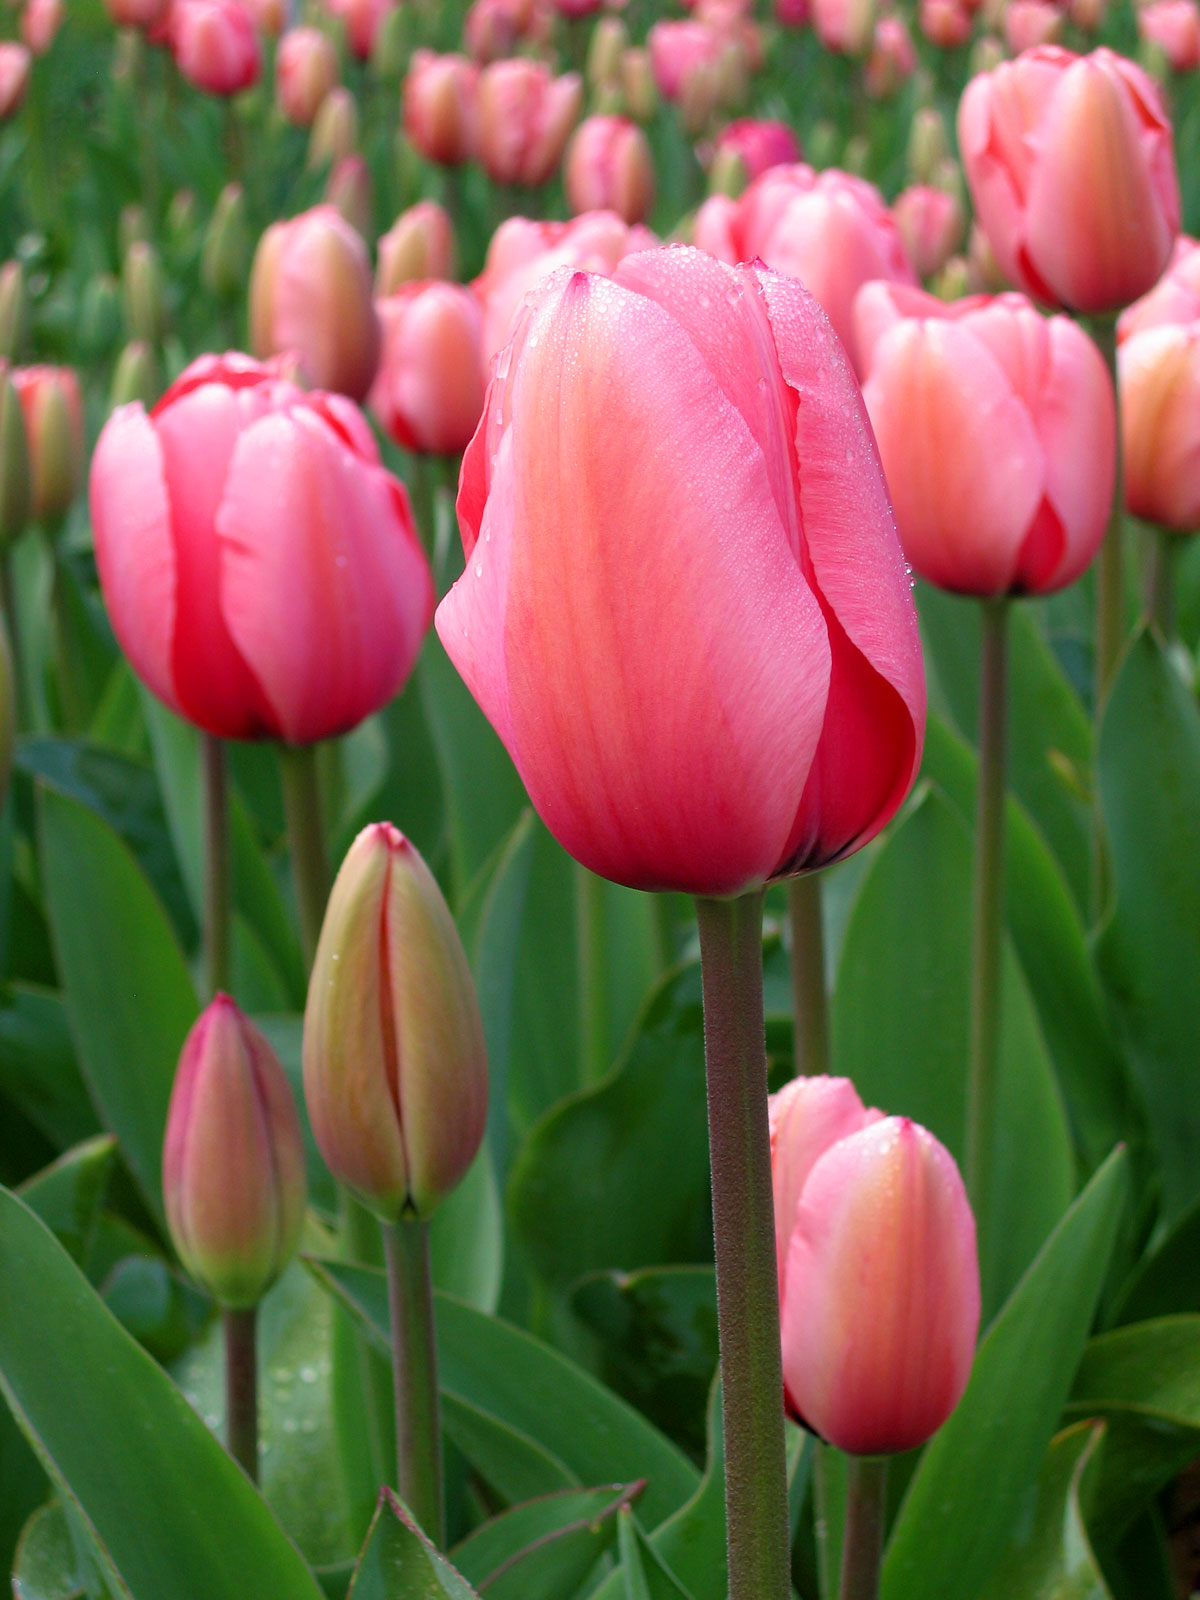 File:Tulip - floriade canberra.jpg - Wikipedia